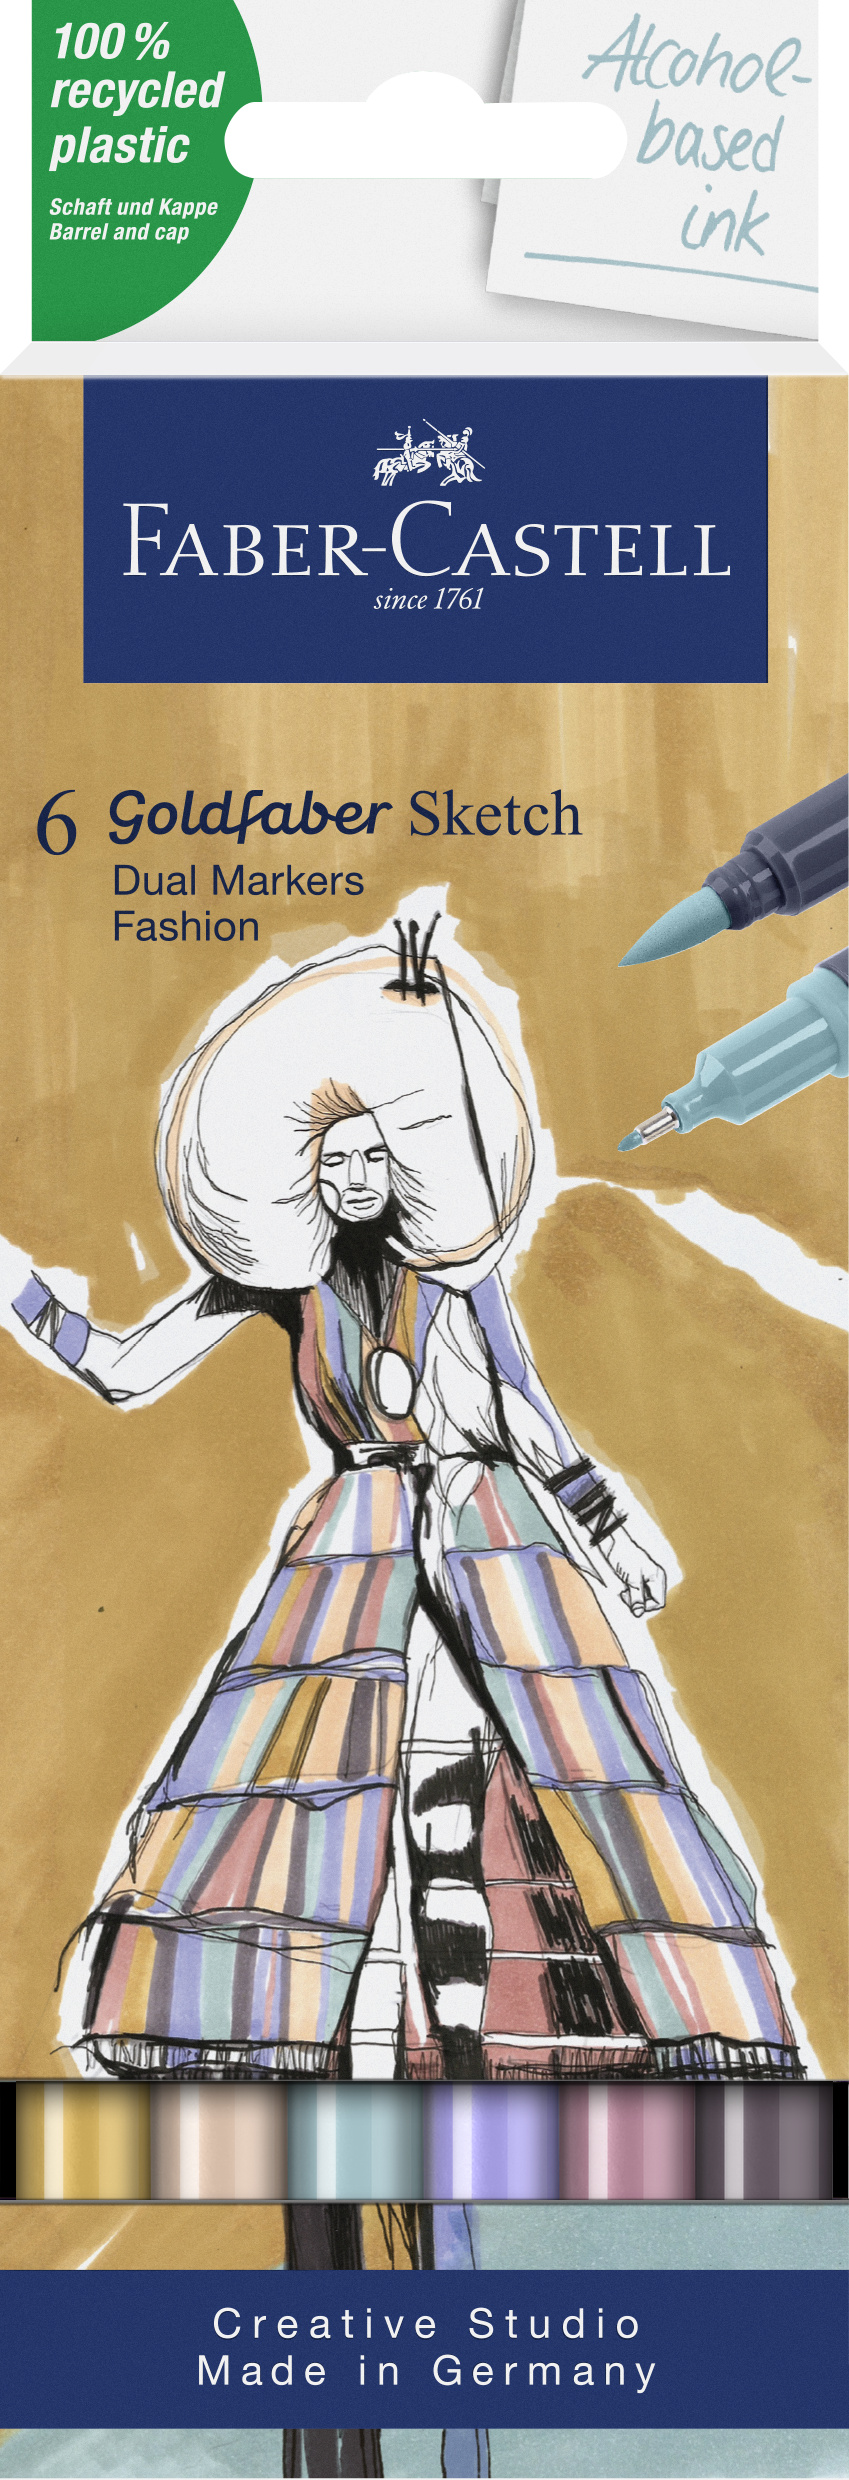 Faber-Castell_Goldfaber Sketch Marker, 6er set, Fashion_EUR 18,00